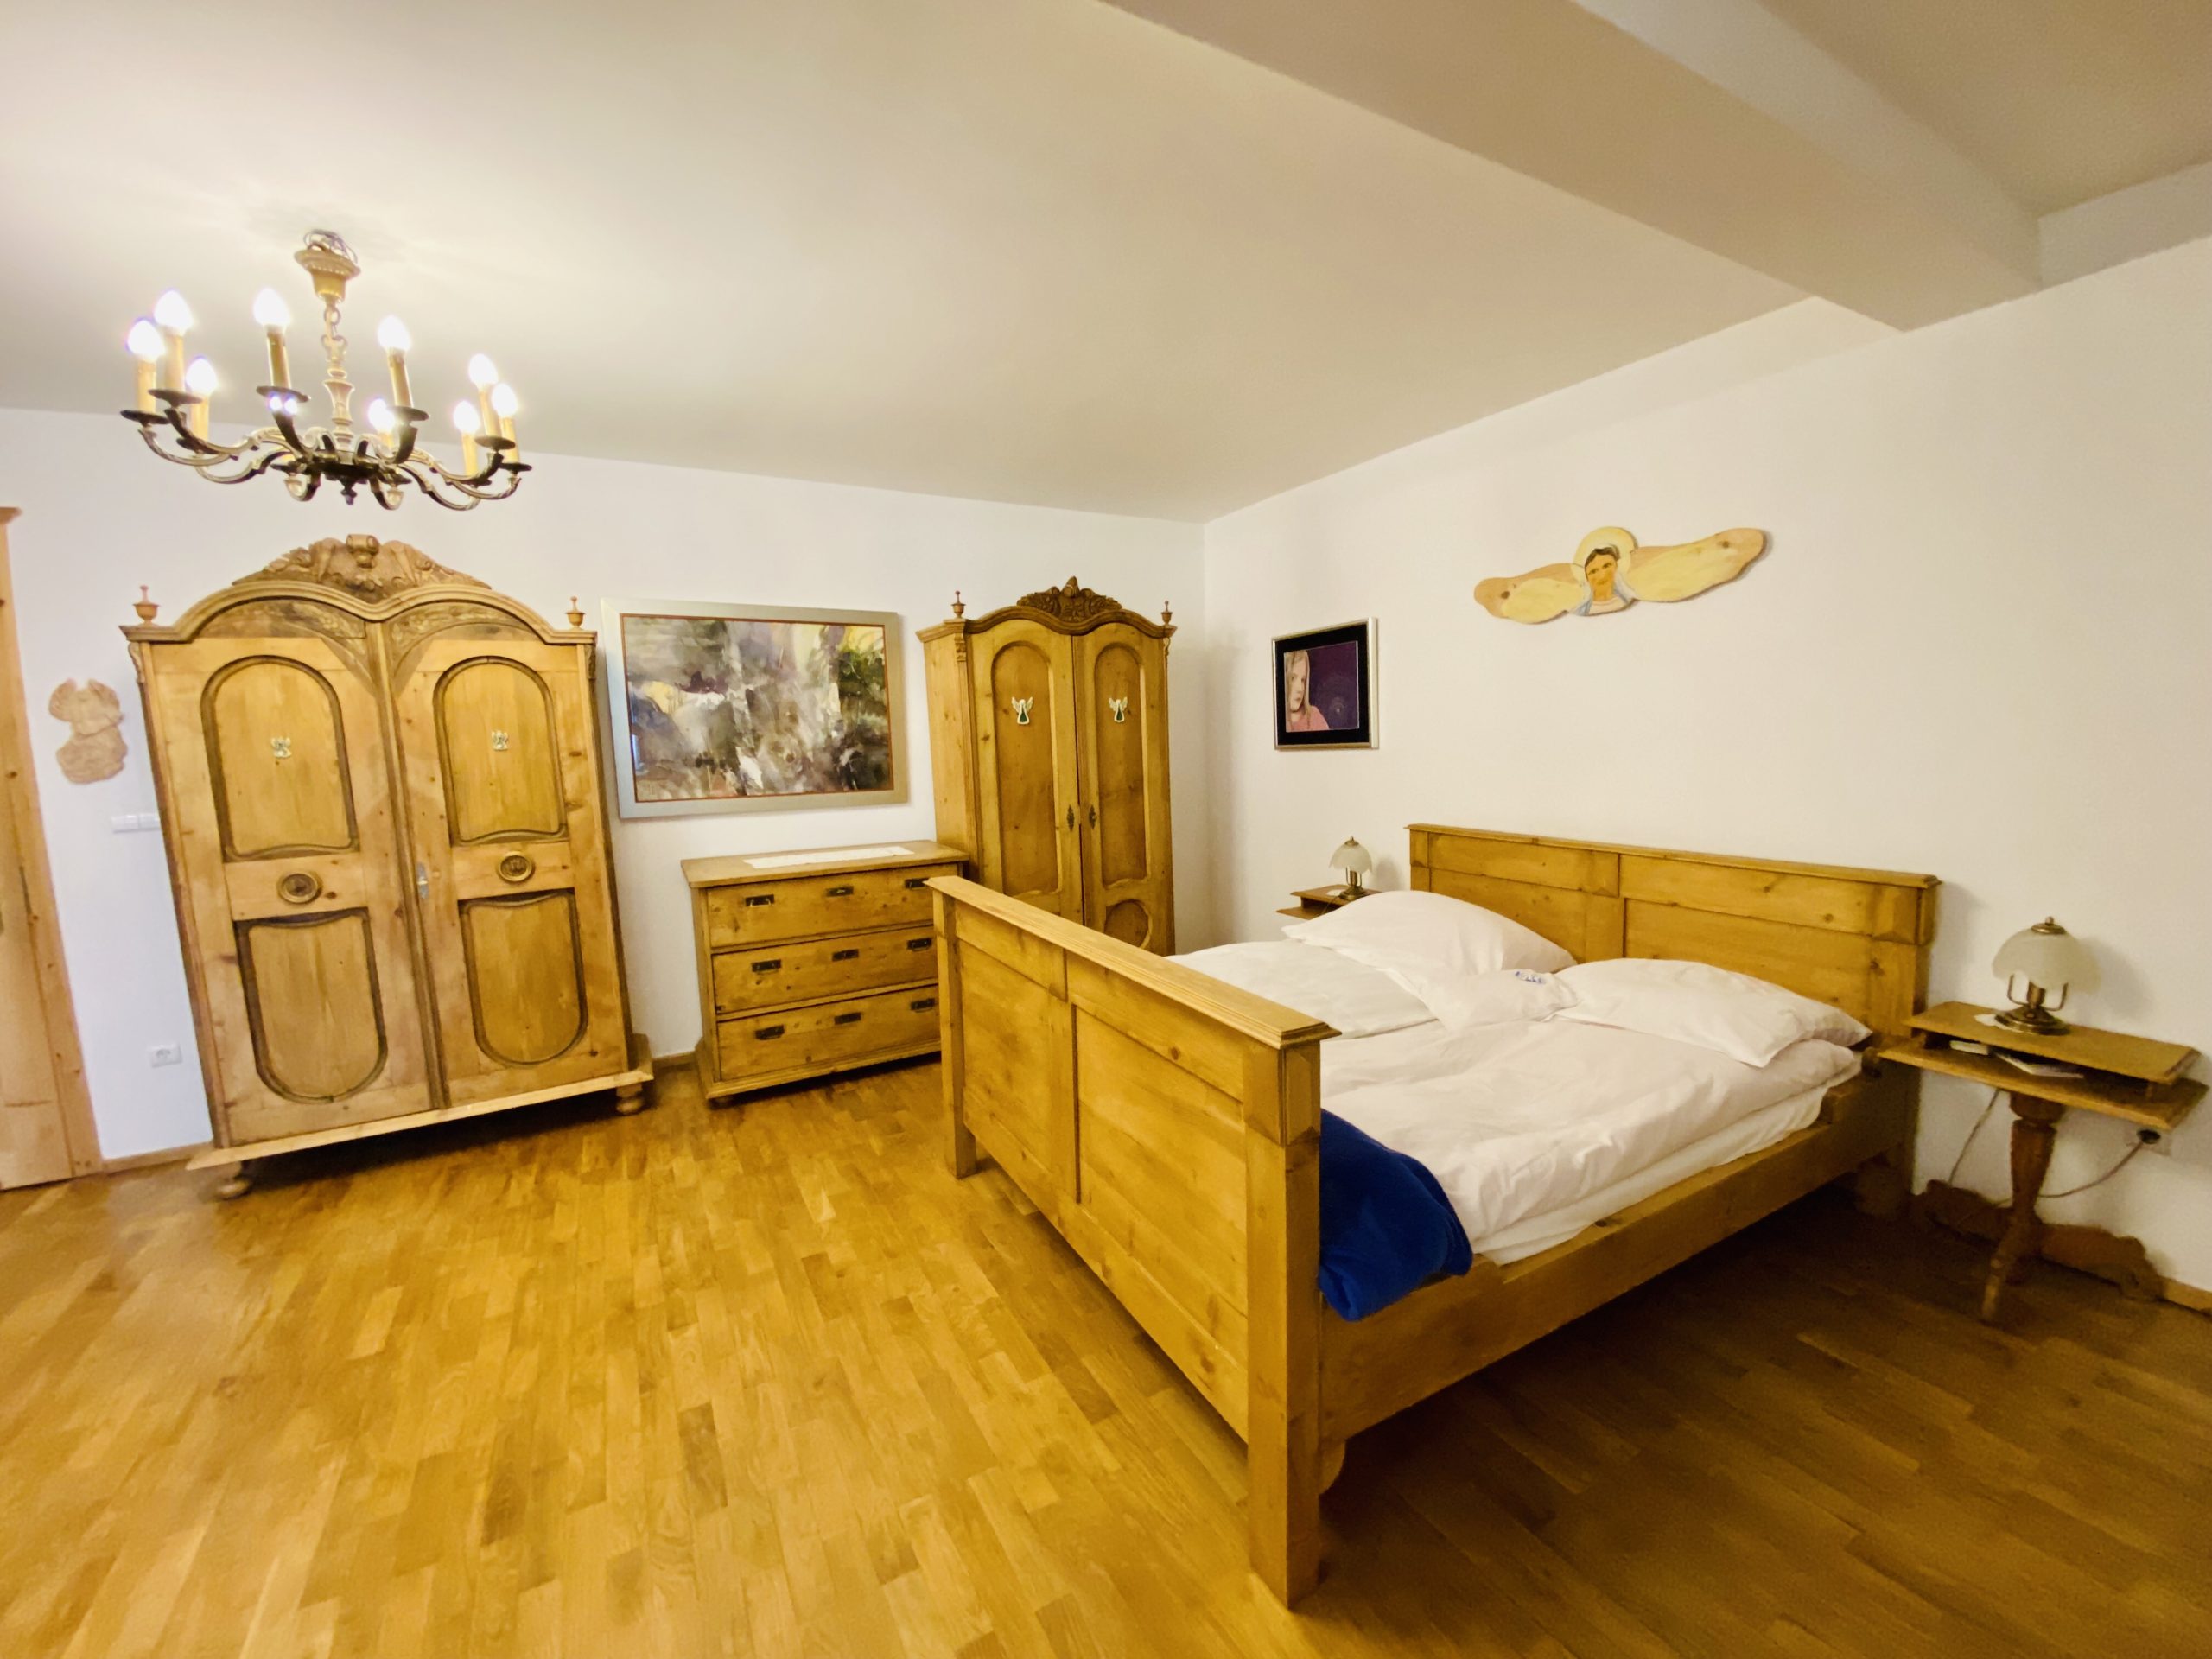 Łóżko małżeńskie oraz drewniane szafy